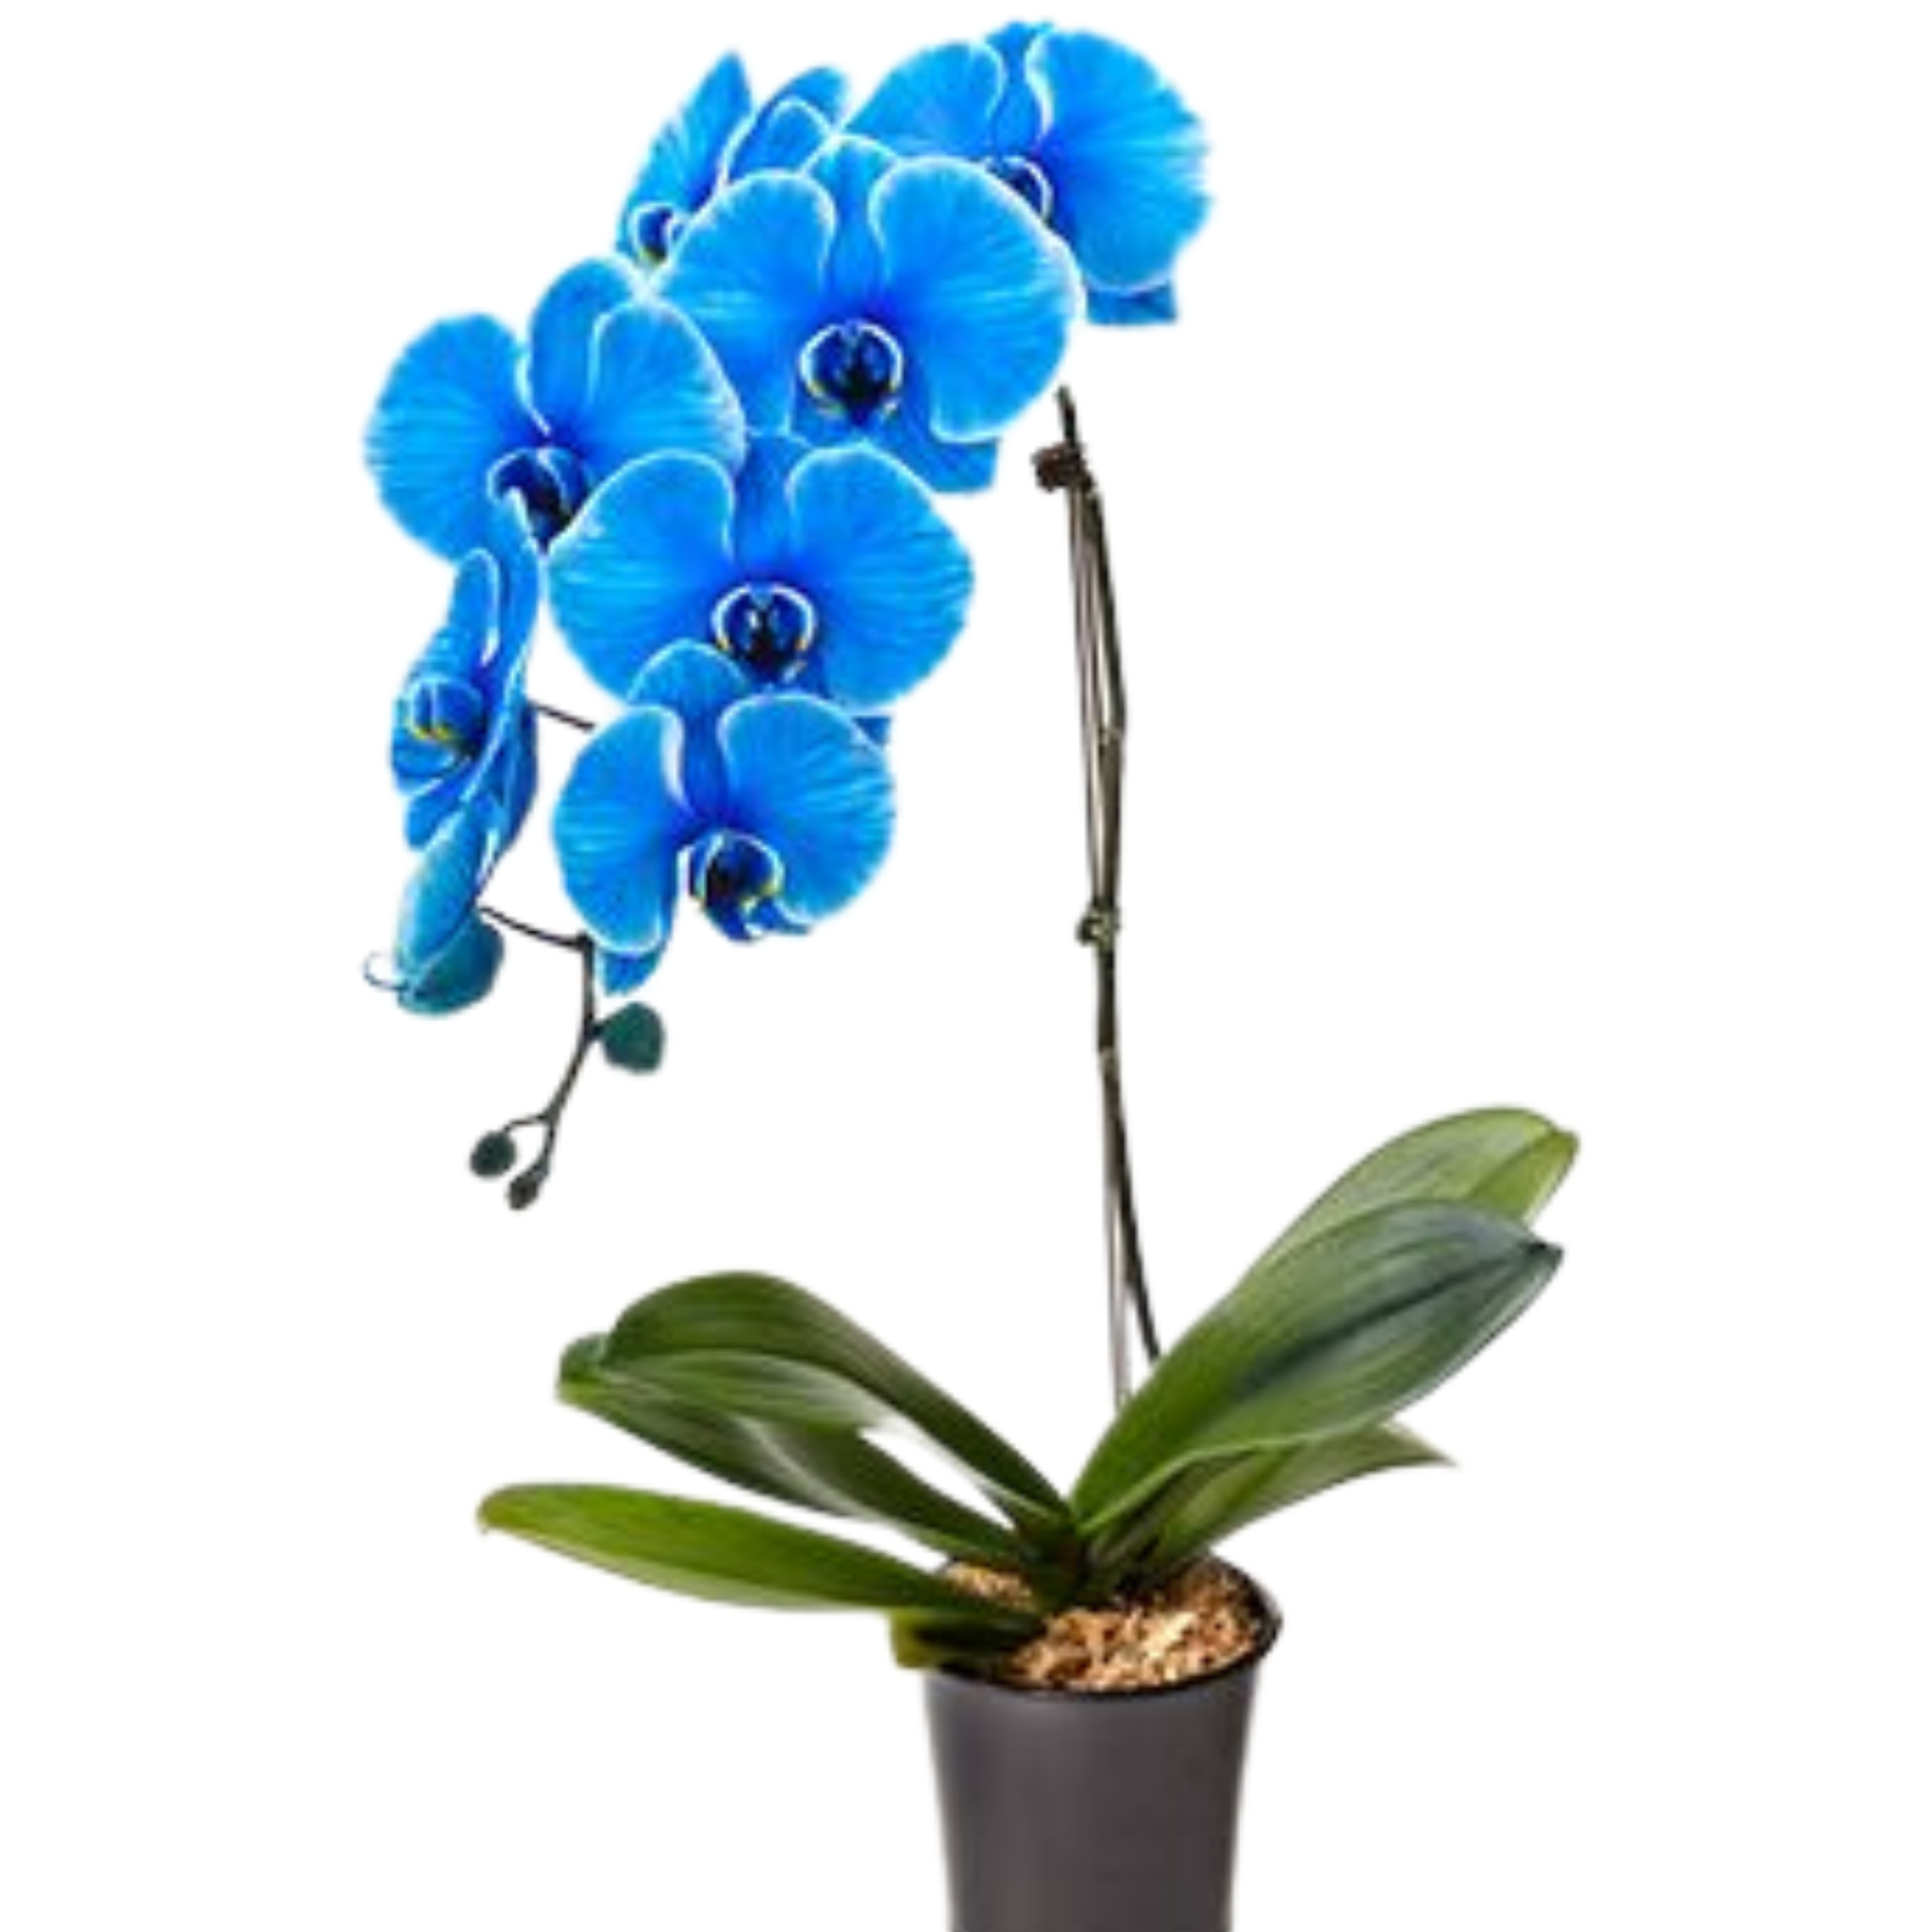 Орхидея фаленопсис голубая. Орхидея фаленопсис синяя. Архидея фаленопсис синяя. Орхидея Королевский голубой фаленопсис. Синяя орхидея в горшке